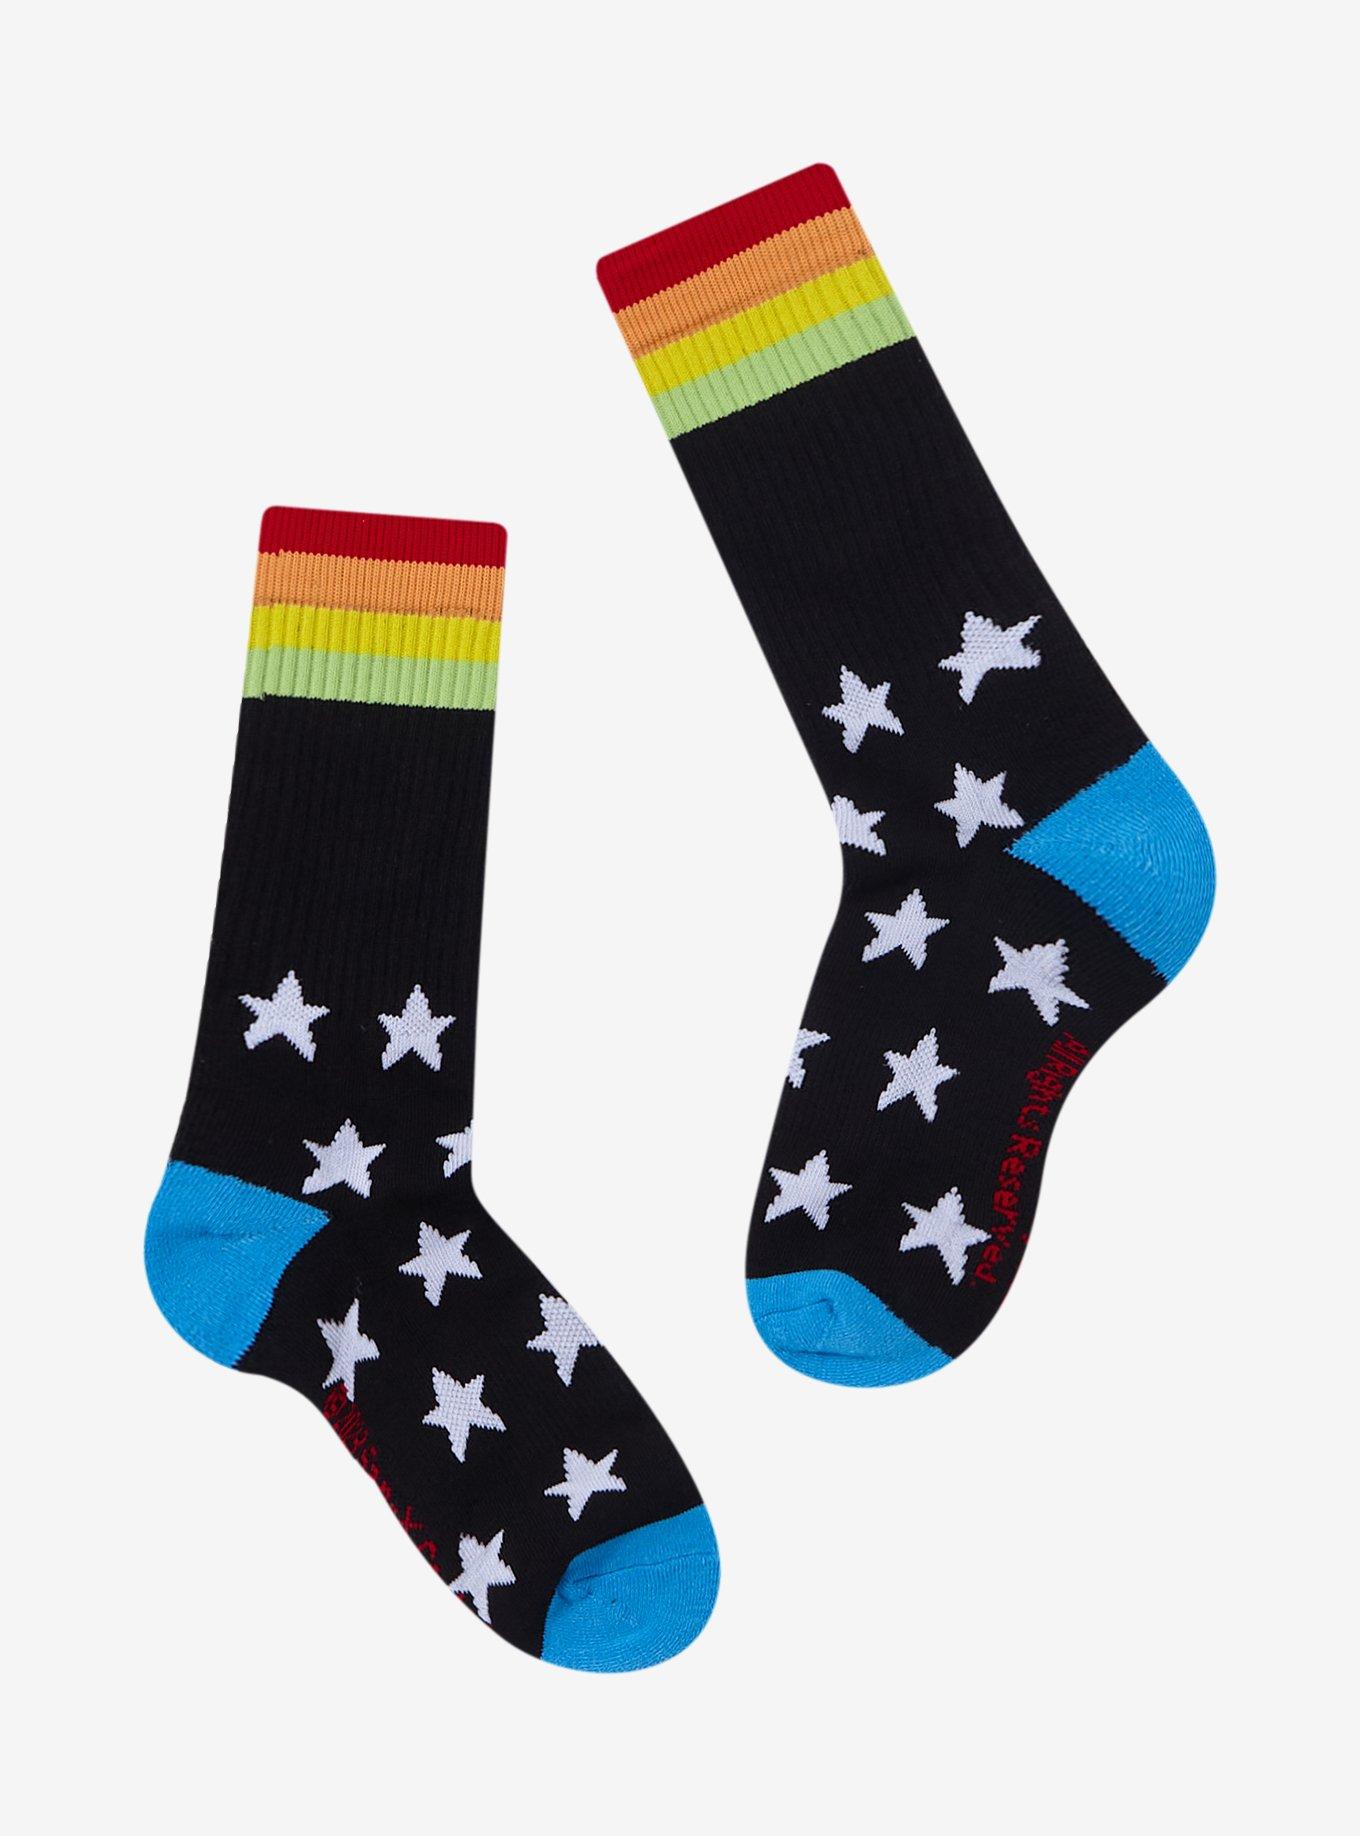 Afro Ken Rainbow Stars Crew Socks